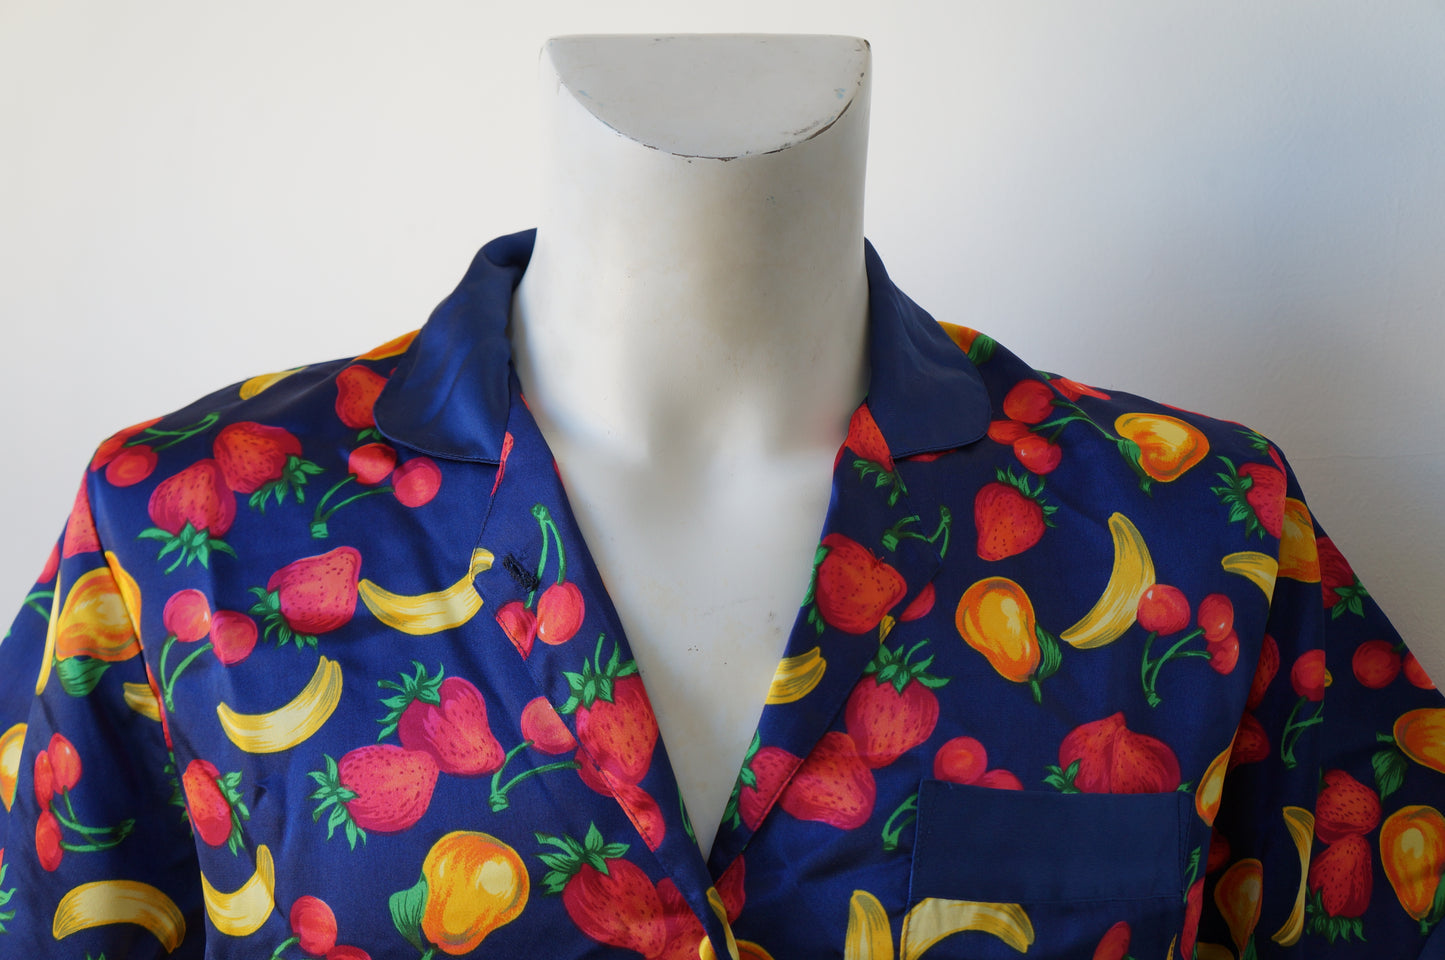 Frutti fruit shirt